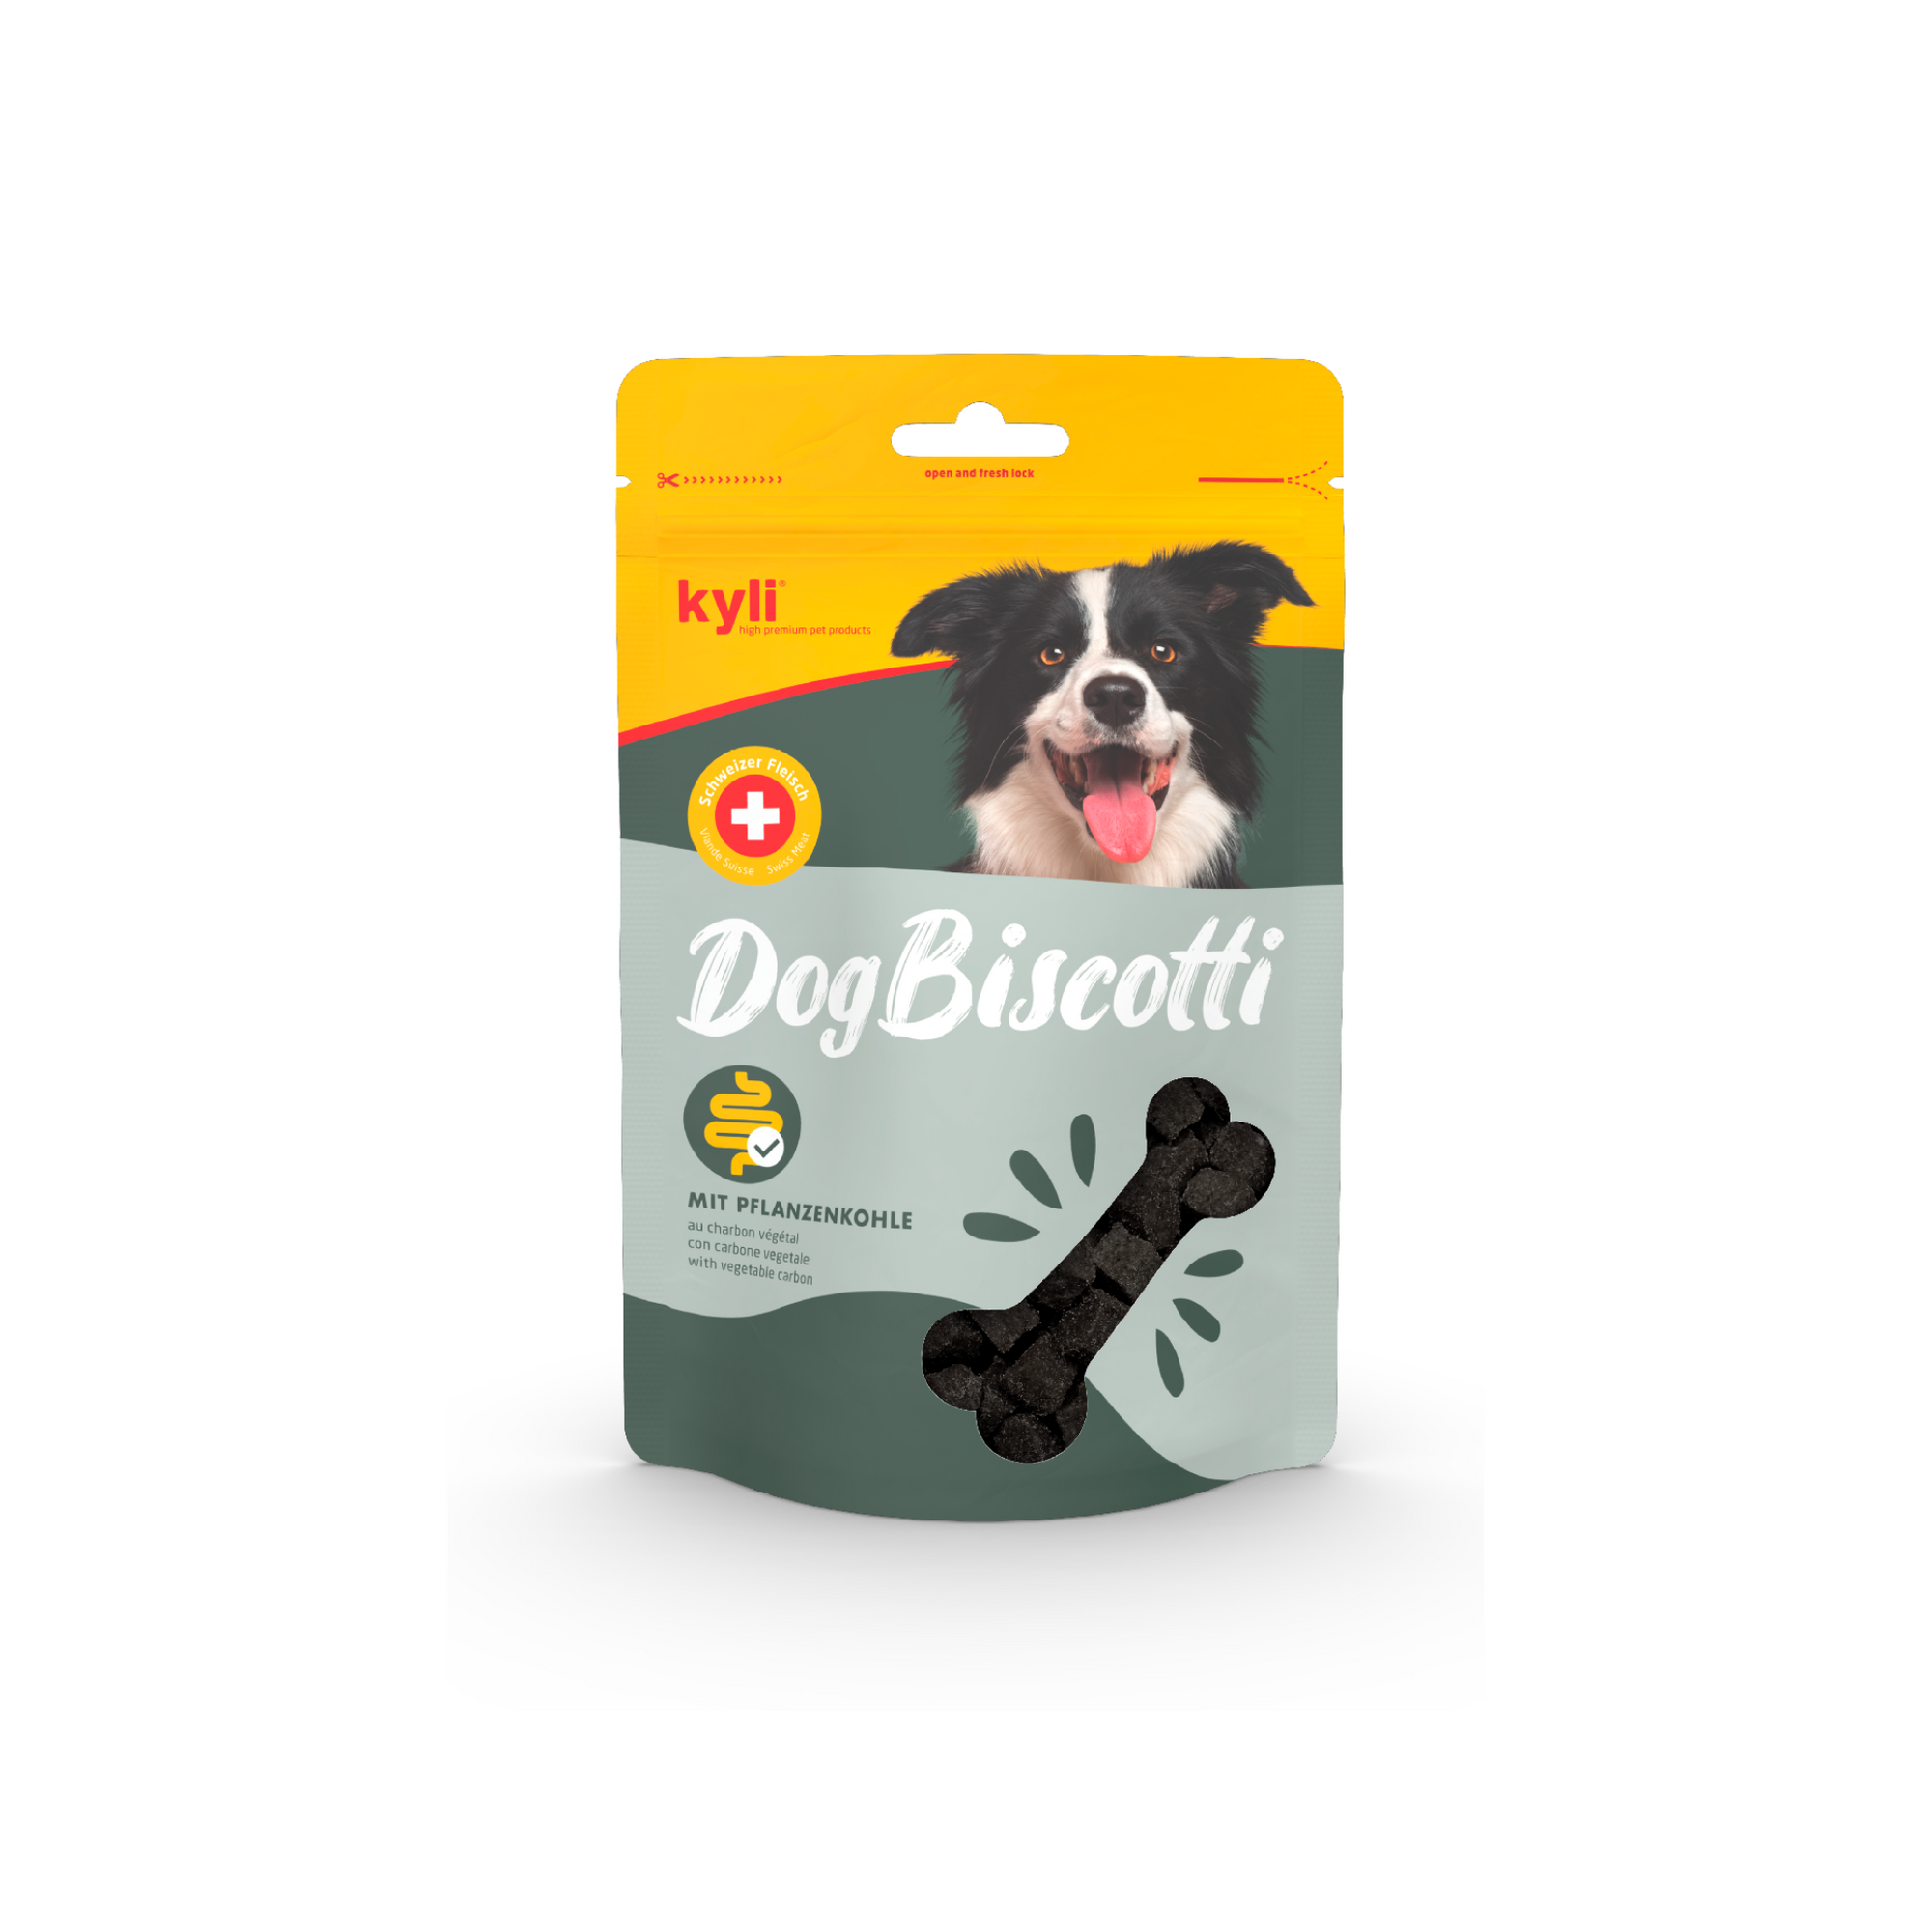 Artikel mit dem Namen kyli DogBiscotti mit Pflanzenkohle im Shop von zoo.de , dem Onlineshop für nachhaltiges Hundefutter und Katzenfutter.